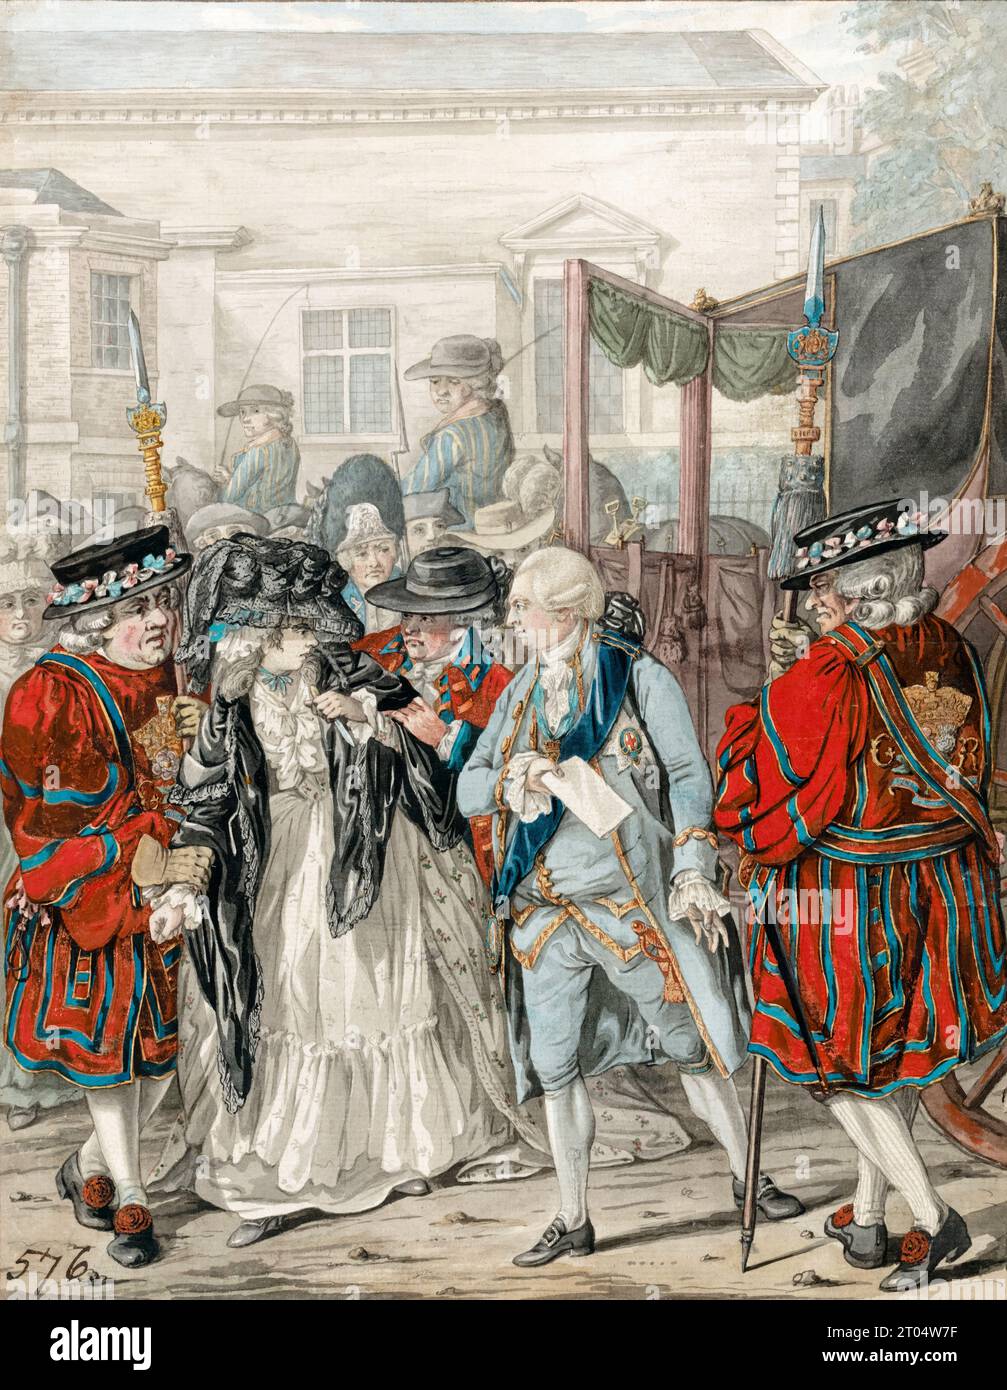 Margaret Nicholson tente d'assassiner sa Majesté George III à l'entrée du jardin du palais St James, le 2 août 1786, peinture à l'aquarelle sur plume et encre par Robert Dighton, 1786 Banque D'Images